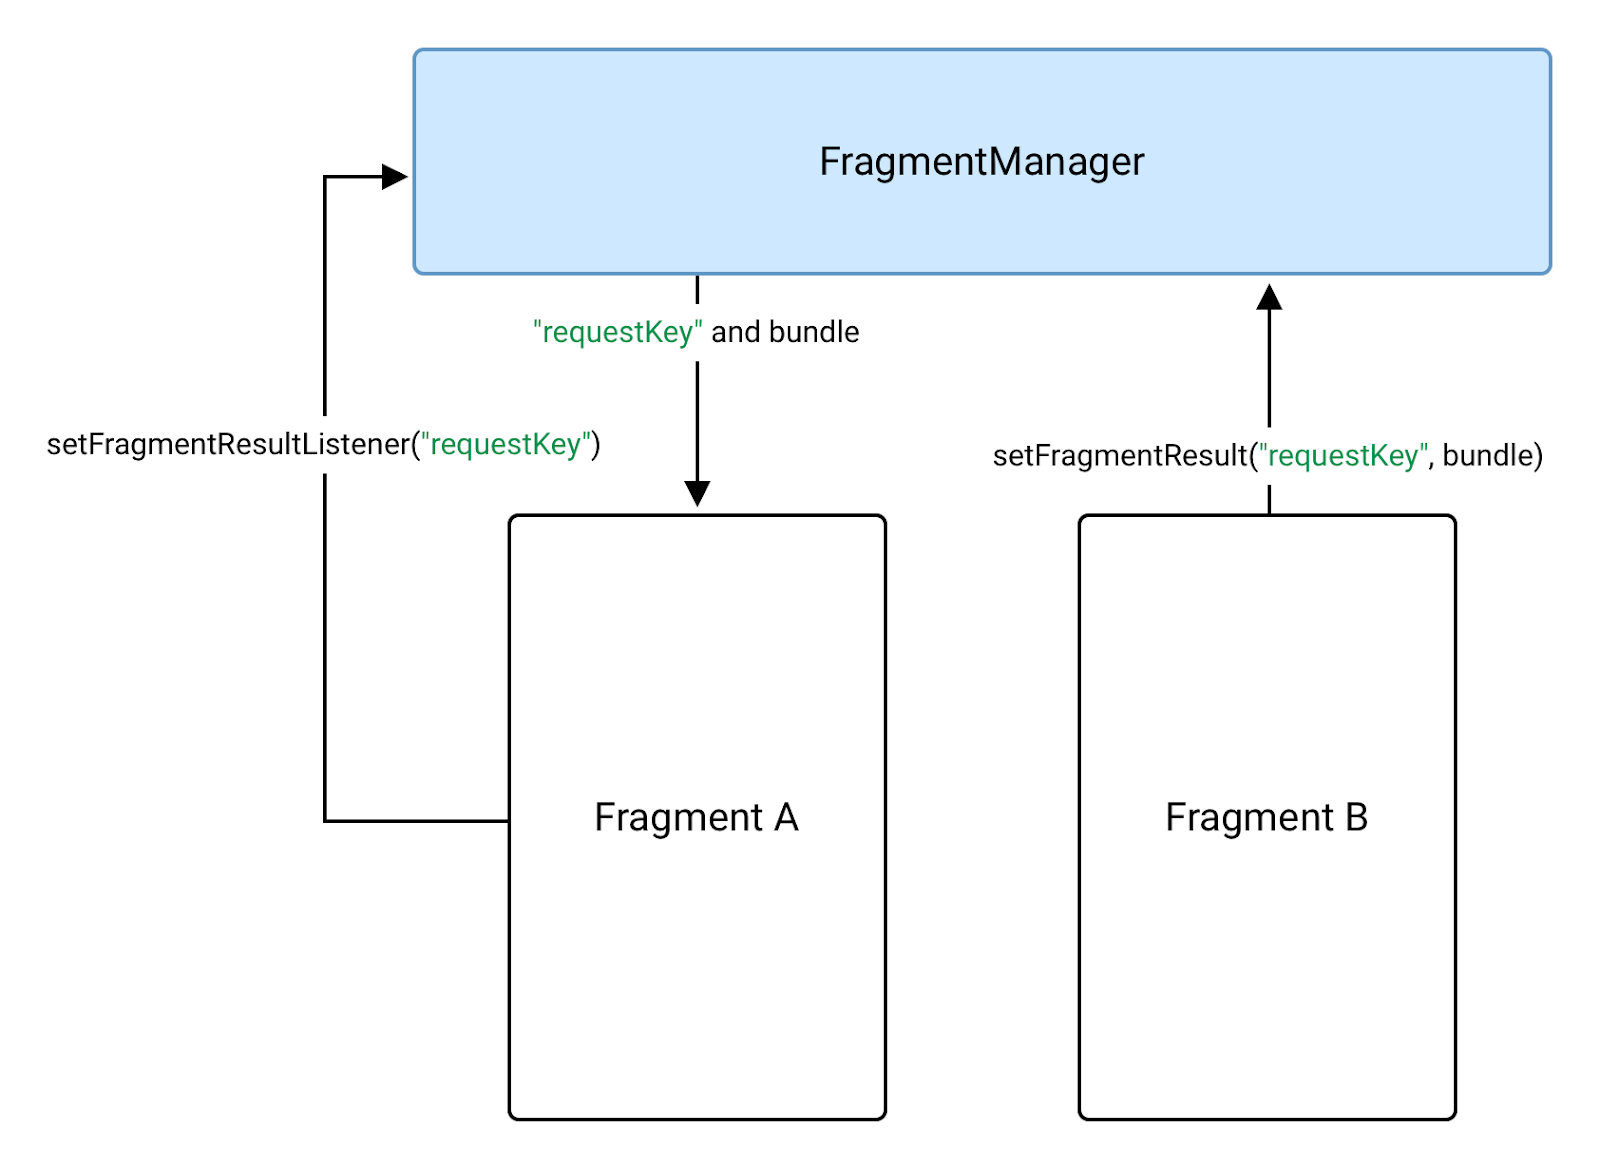 FragmentManager を使用してフラグメント B がフラグメント A にデータを送信する